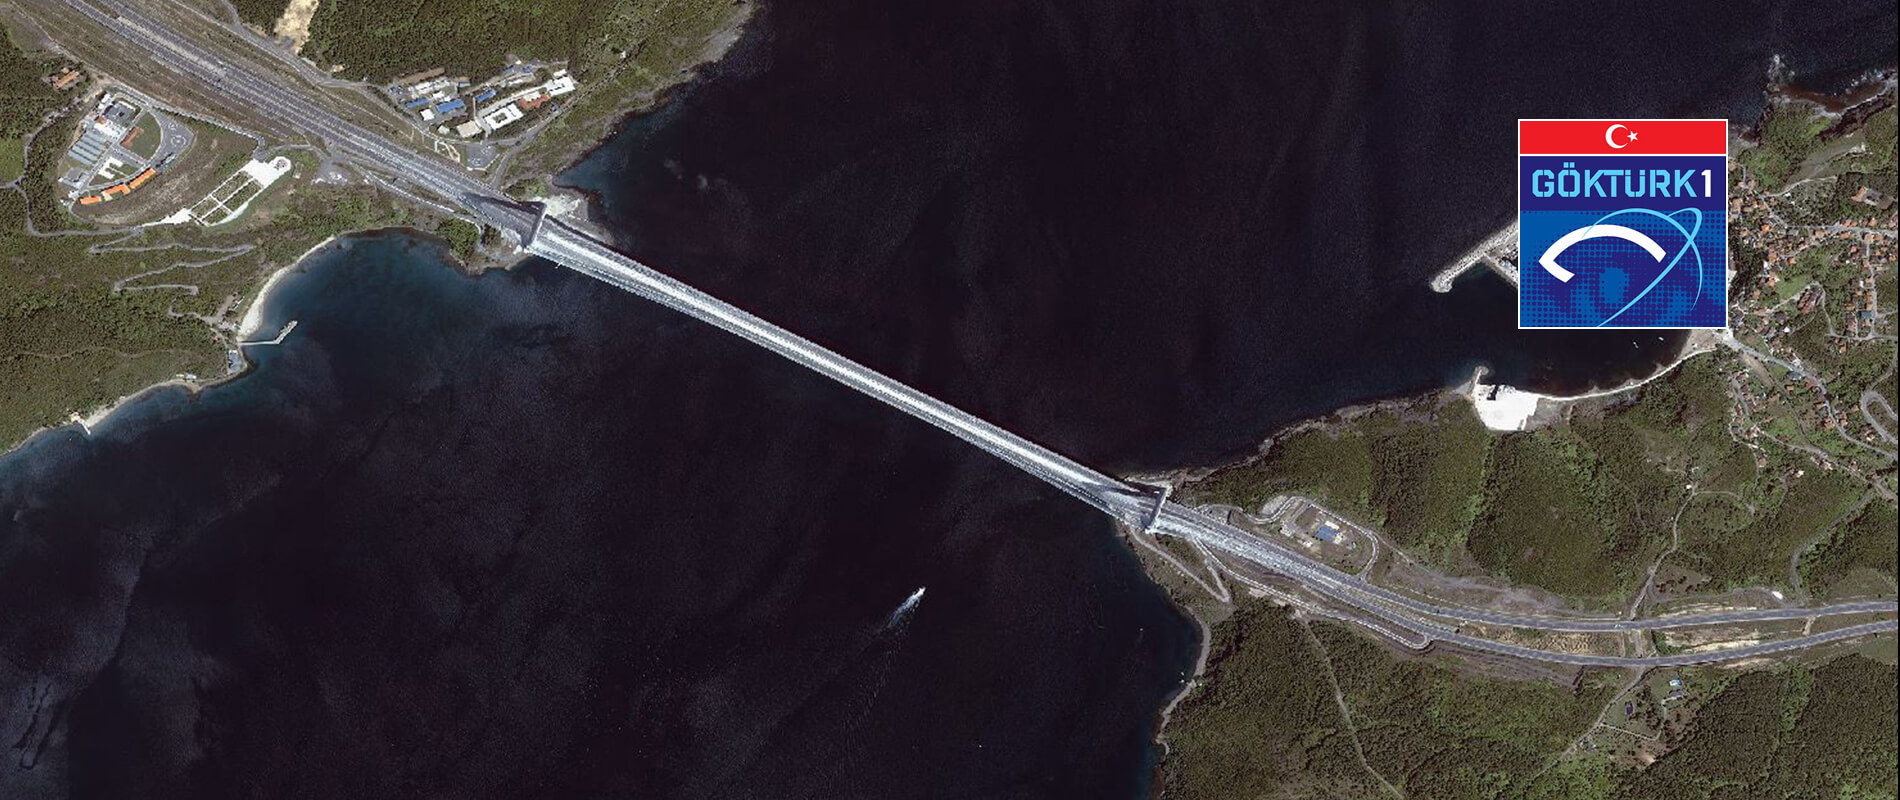 Göktürk-1 Uydusu -Yavuz Selim Köprüsü